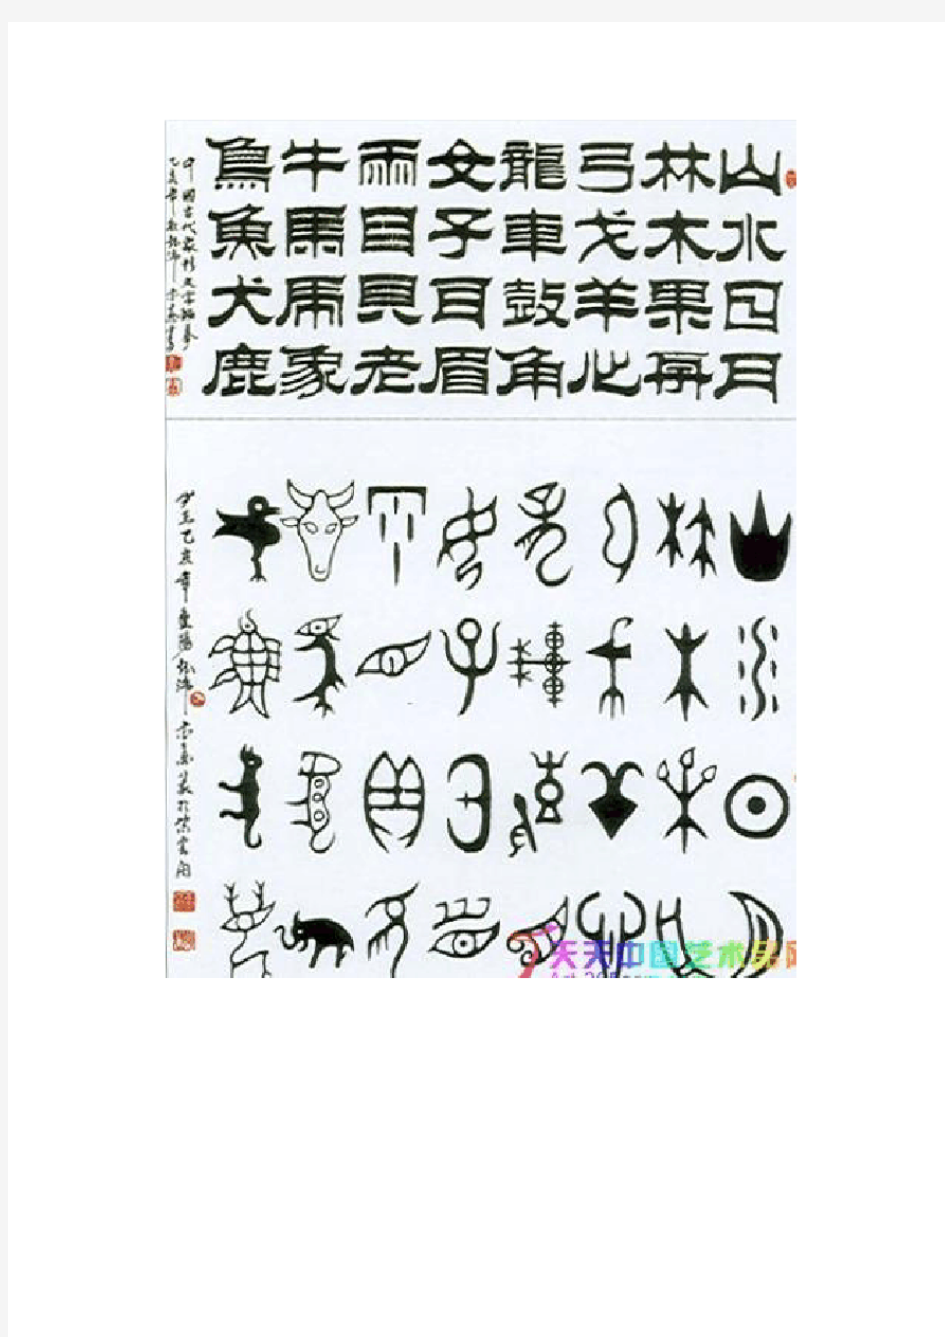 中国象形字对照表大全